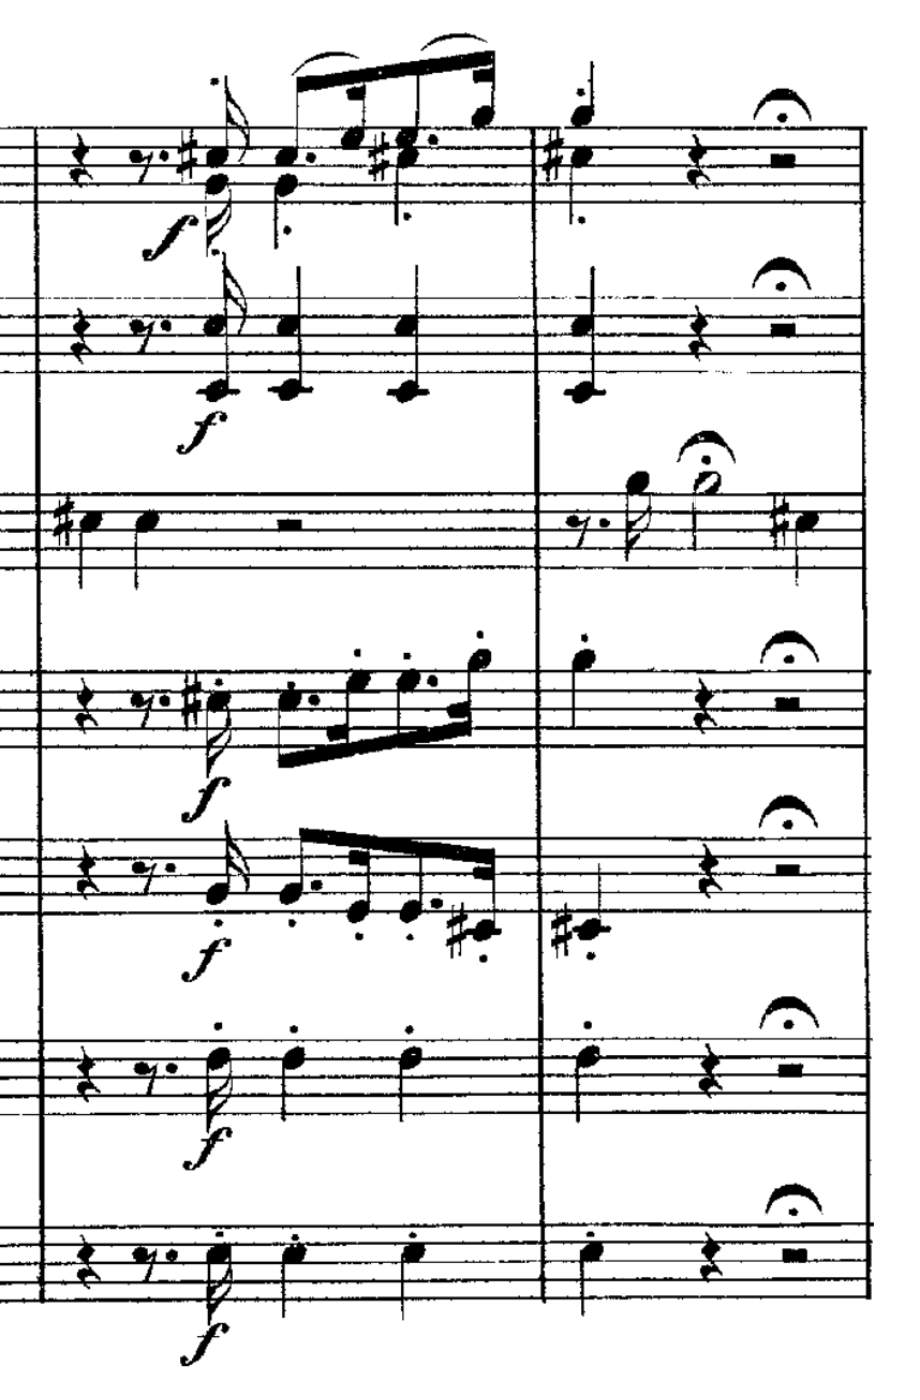 What is Cadenza - Cadenza in Mozart's Concerto